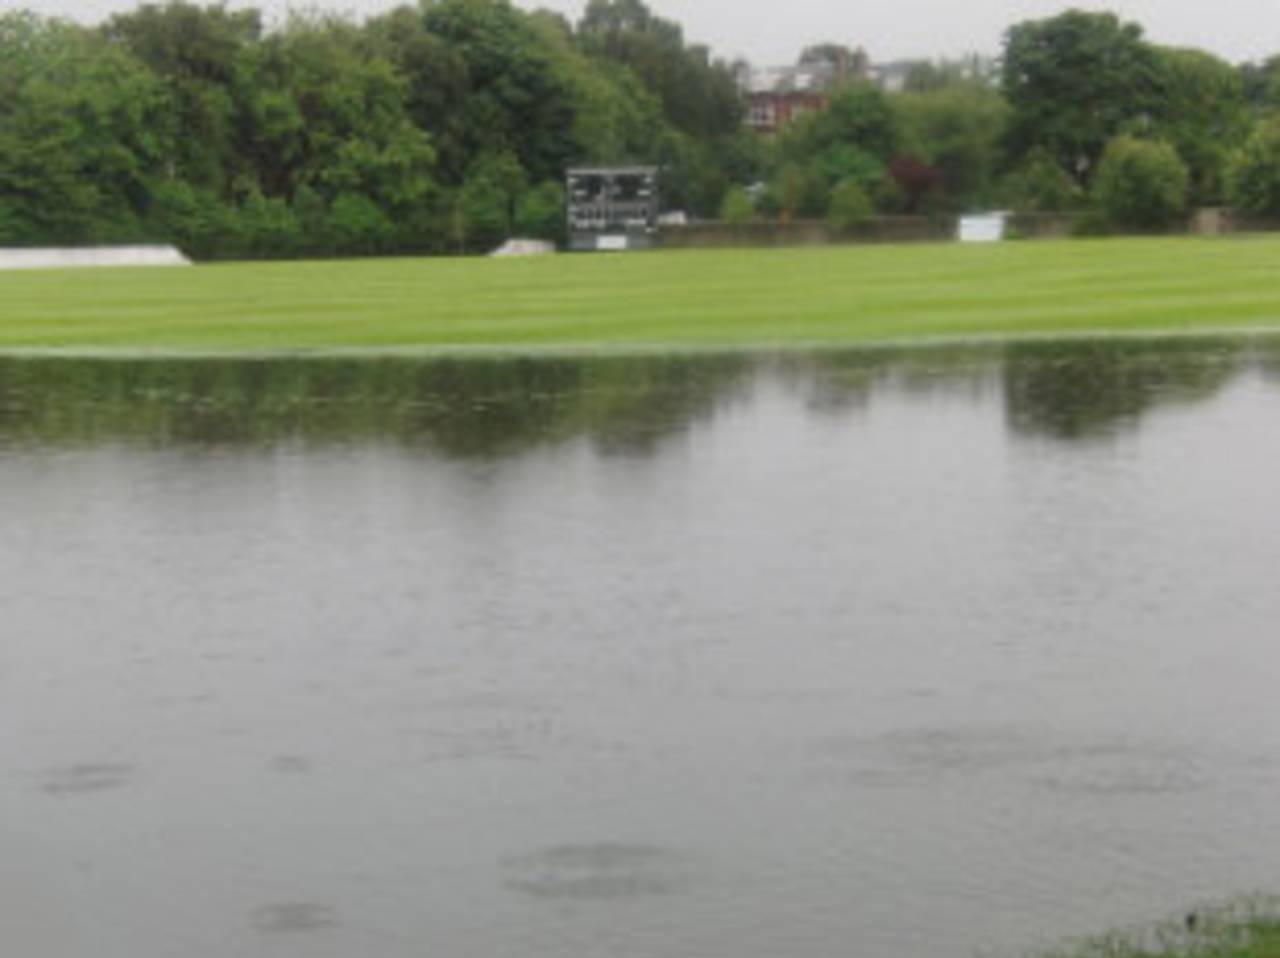 The Grange has suffered from a summer of unprecedented flooding&nbsp;&nbsp;&bull;&nbsp;&nbsp;Cricket Scotland